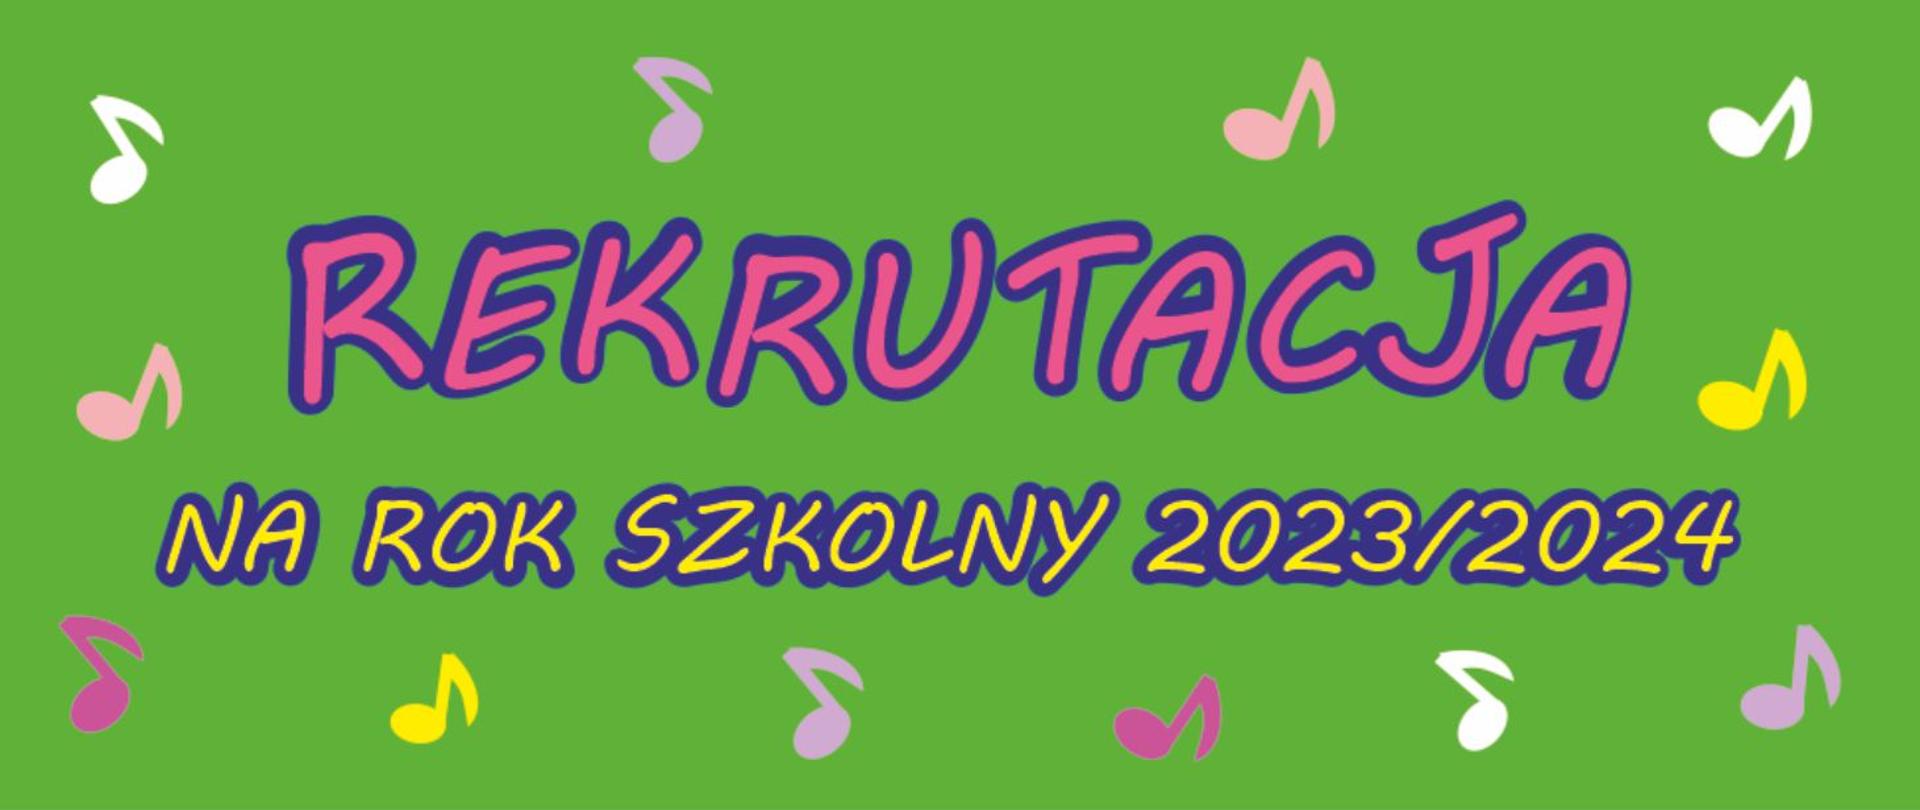 Grafika rekrutacyjna na zielonym tle ozdobiona ikonografią kolorowych nut oraz tekst "Rekrutacja na rok szkolny 2023/24"